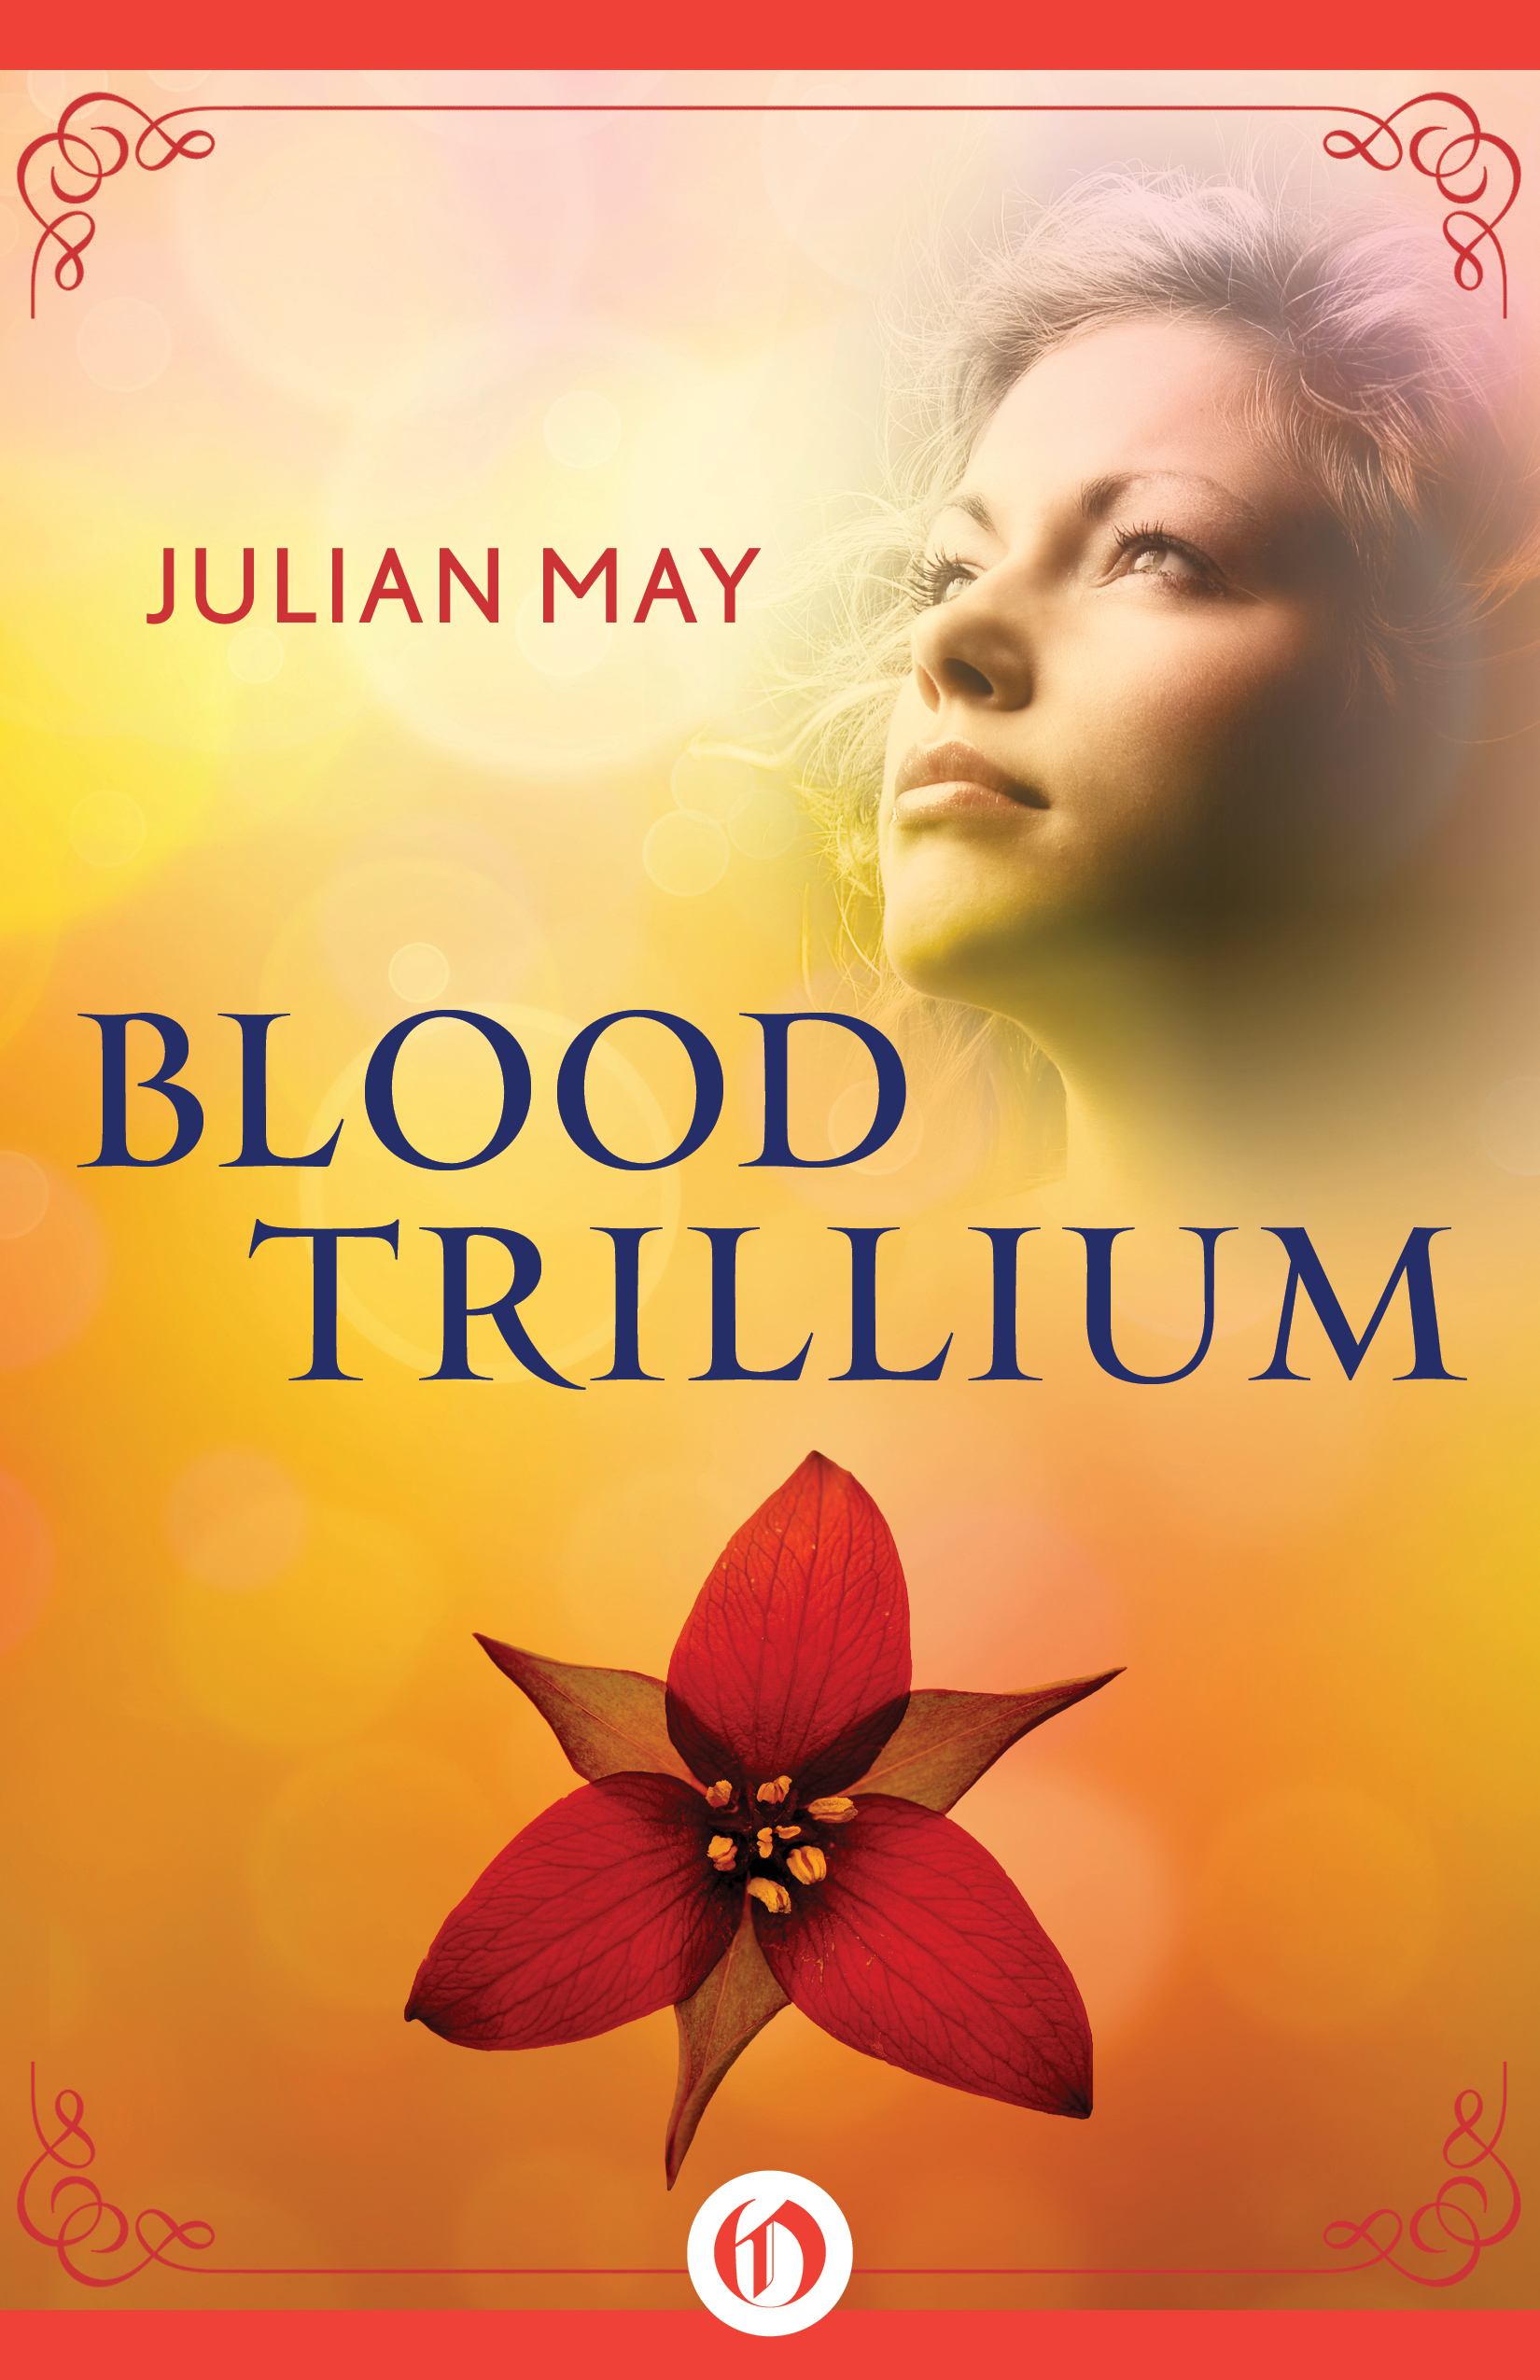 blood trillium 2015